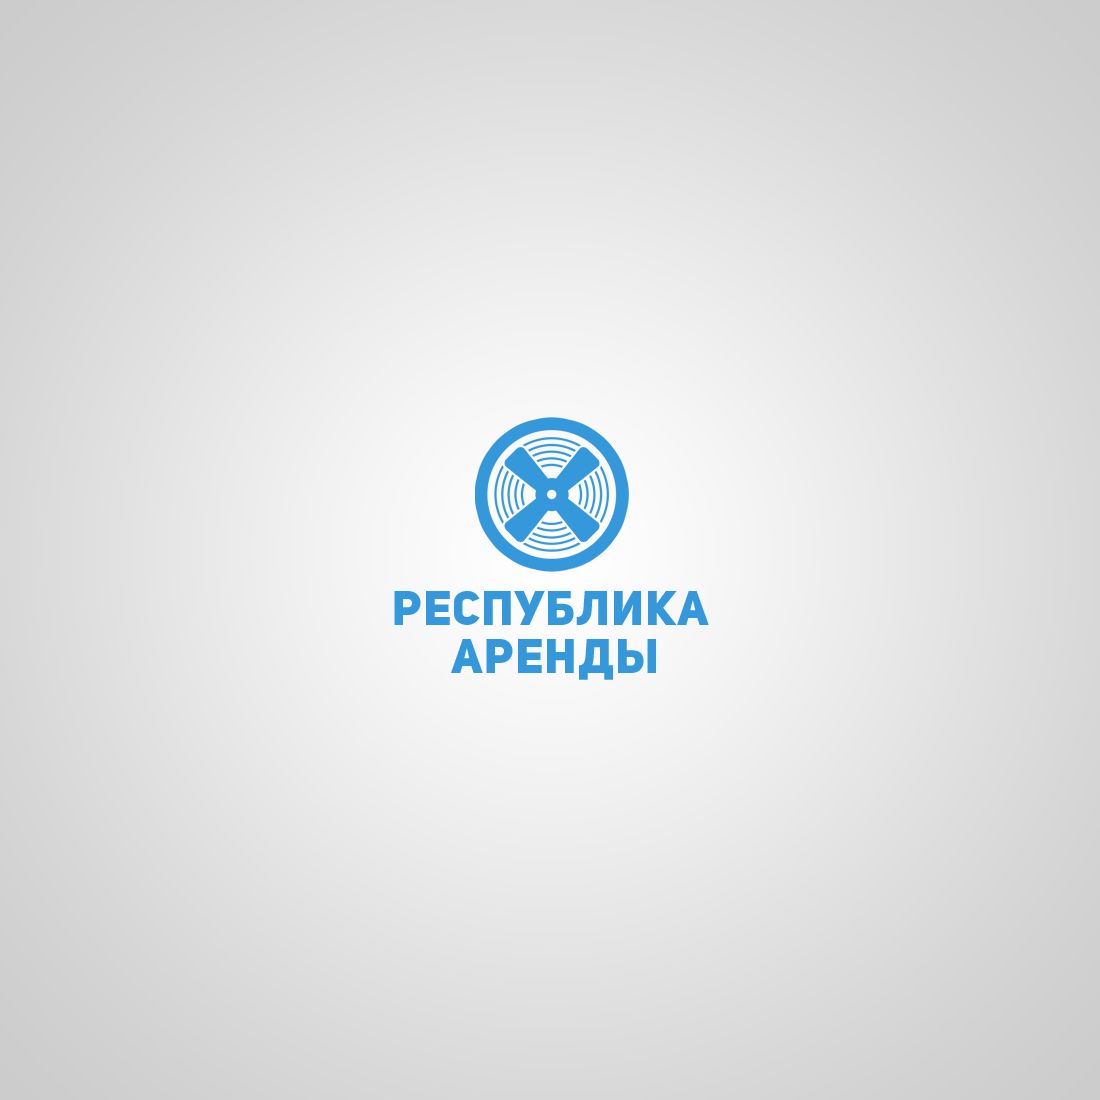 Логотип для компании по аренде квадракоптеров - дизайнер IIsixo_O